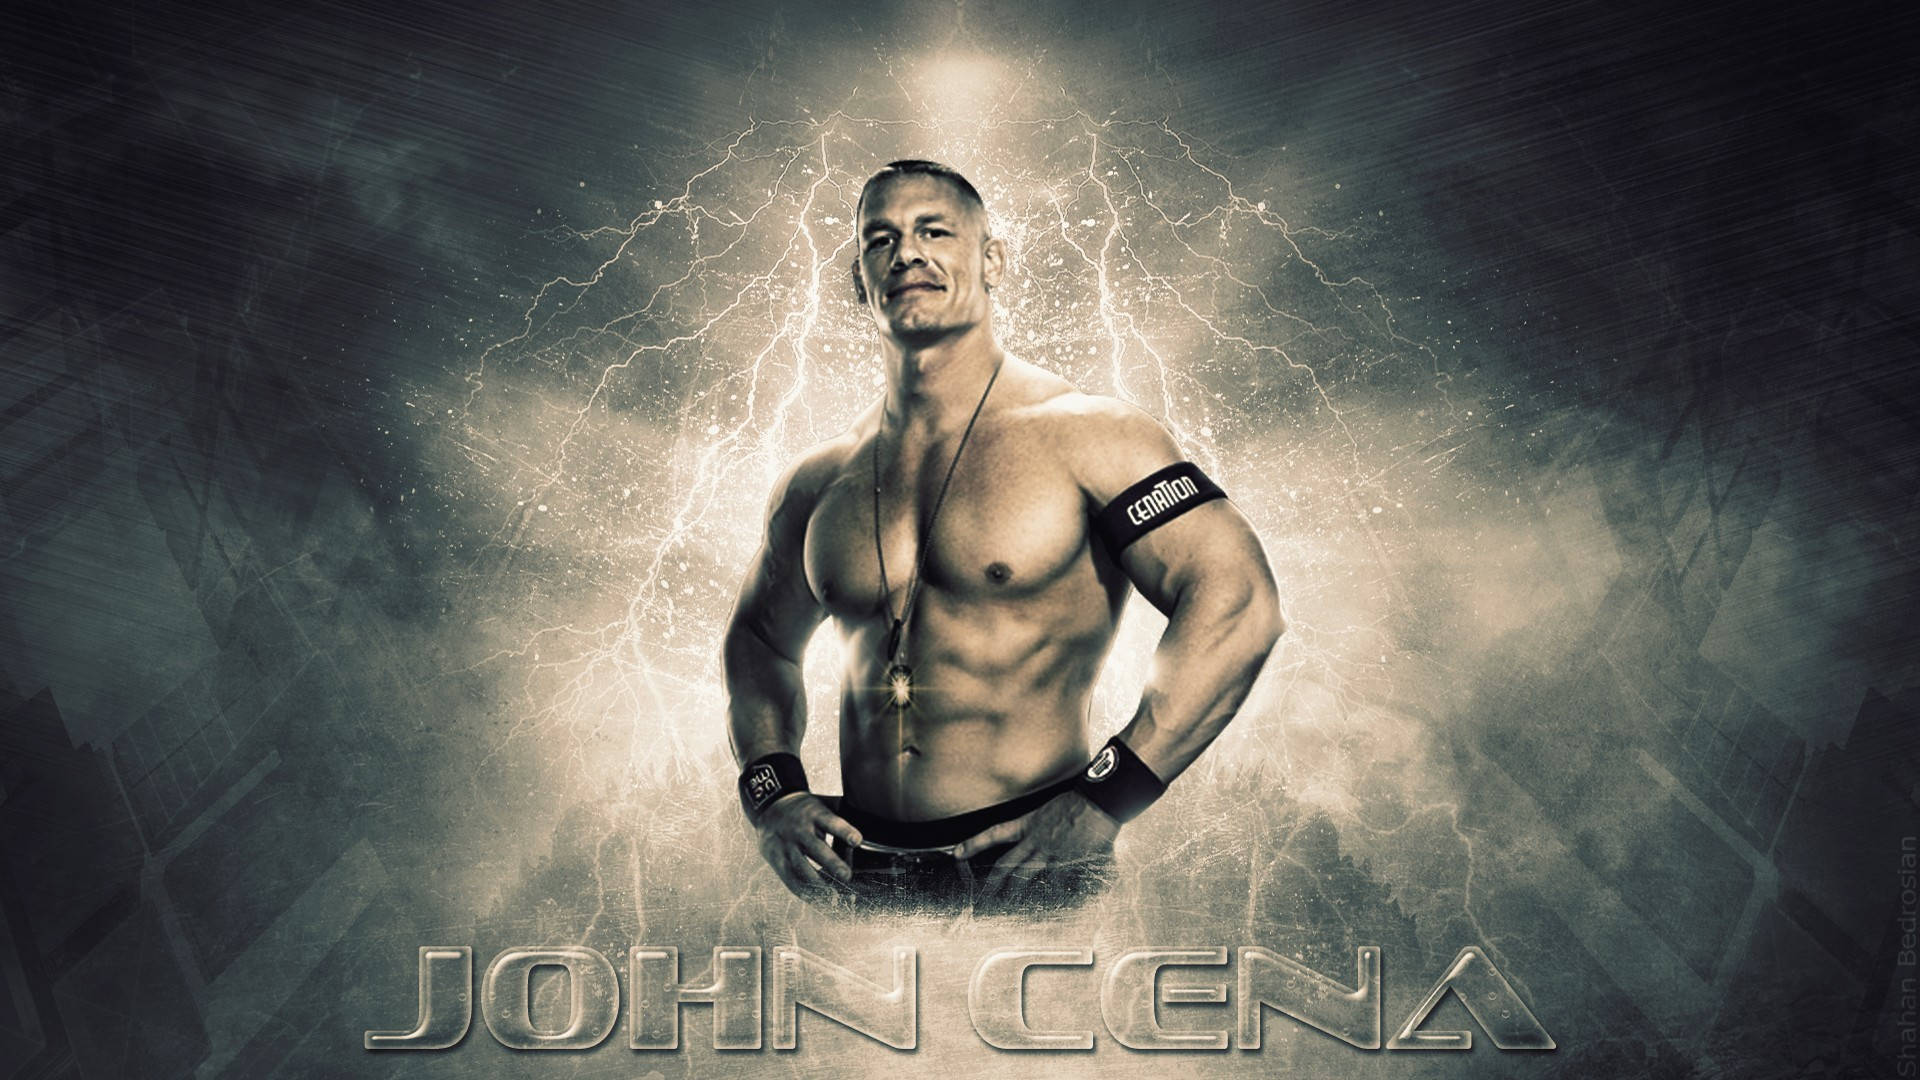 Wwe Superstar John Cena Aesthetic Cover Background